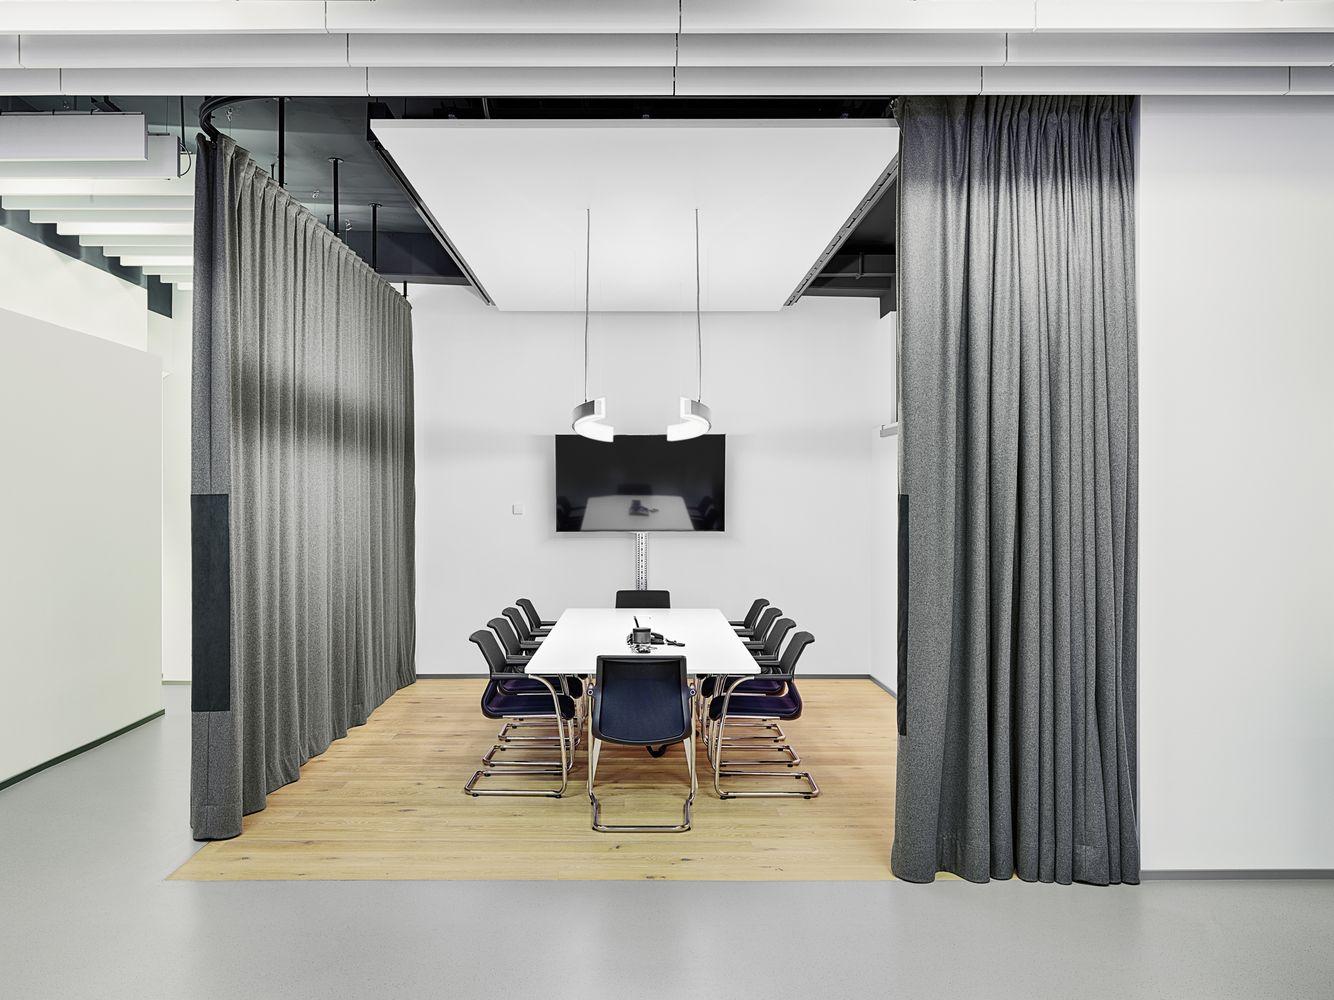 Acústica variable para salas de reuniones y grupos de reflexión mediante cortinas insonorizadas